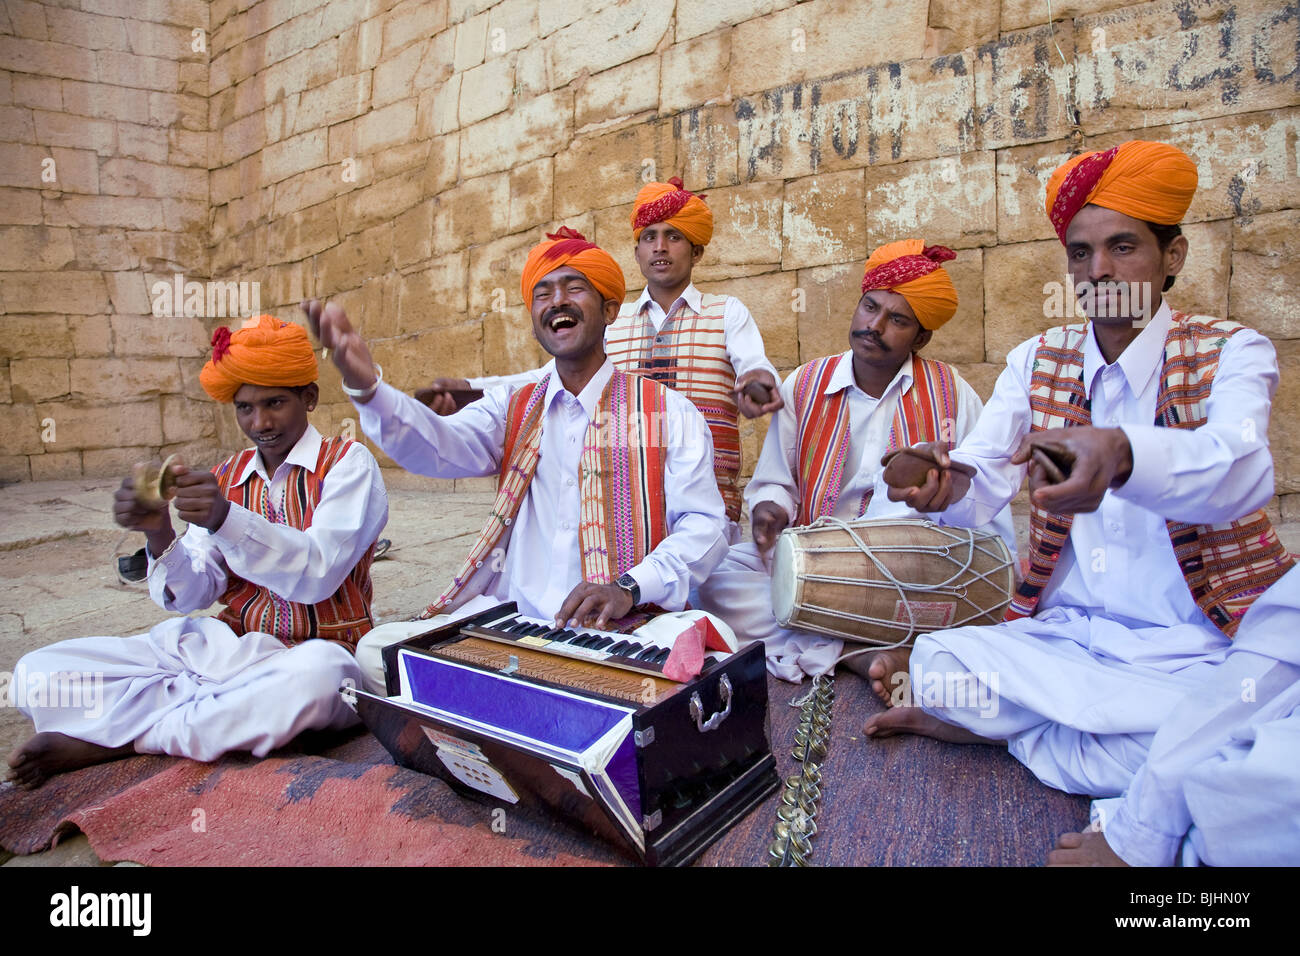 Street musicians. Jaisalmer. India Stock Photo